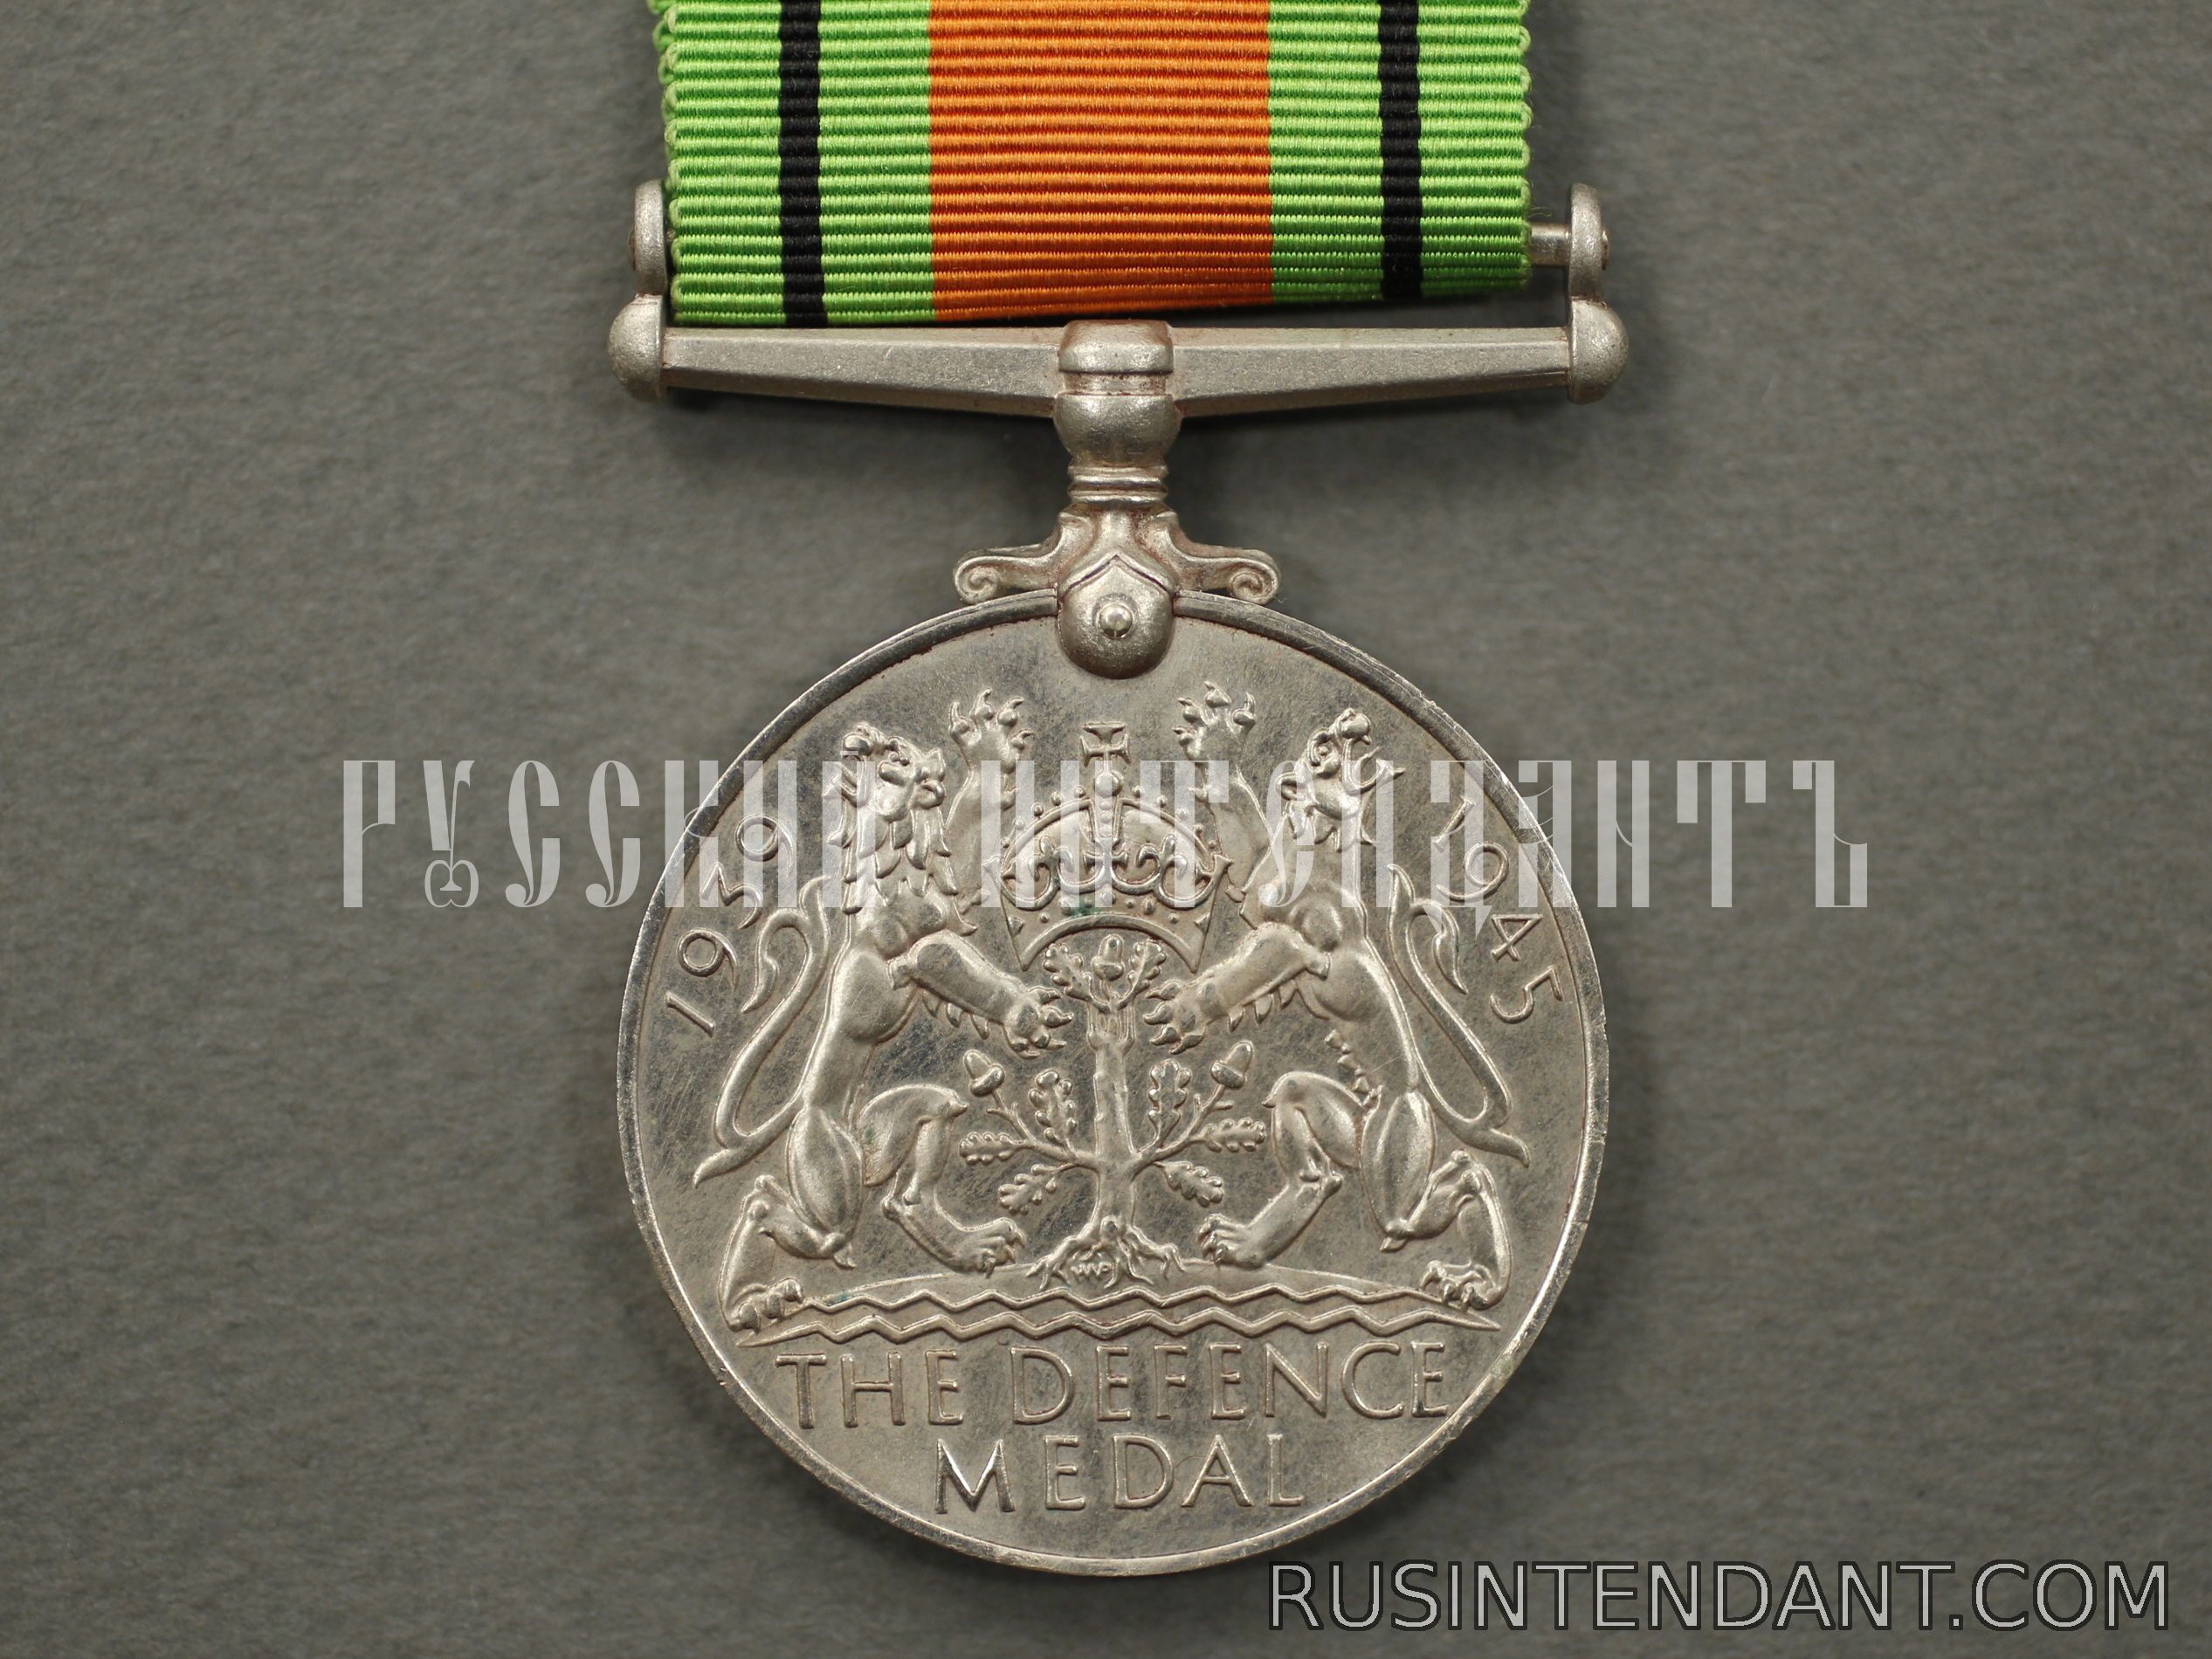 Фото 2: Английская медаль "За оборону" 